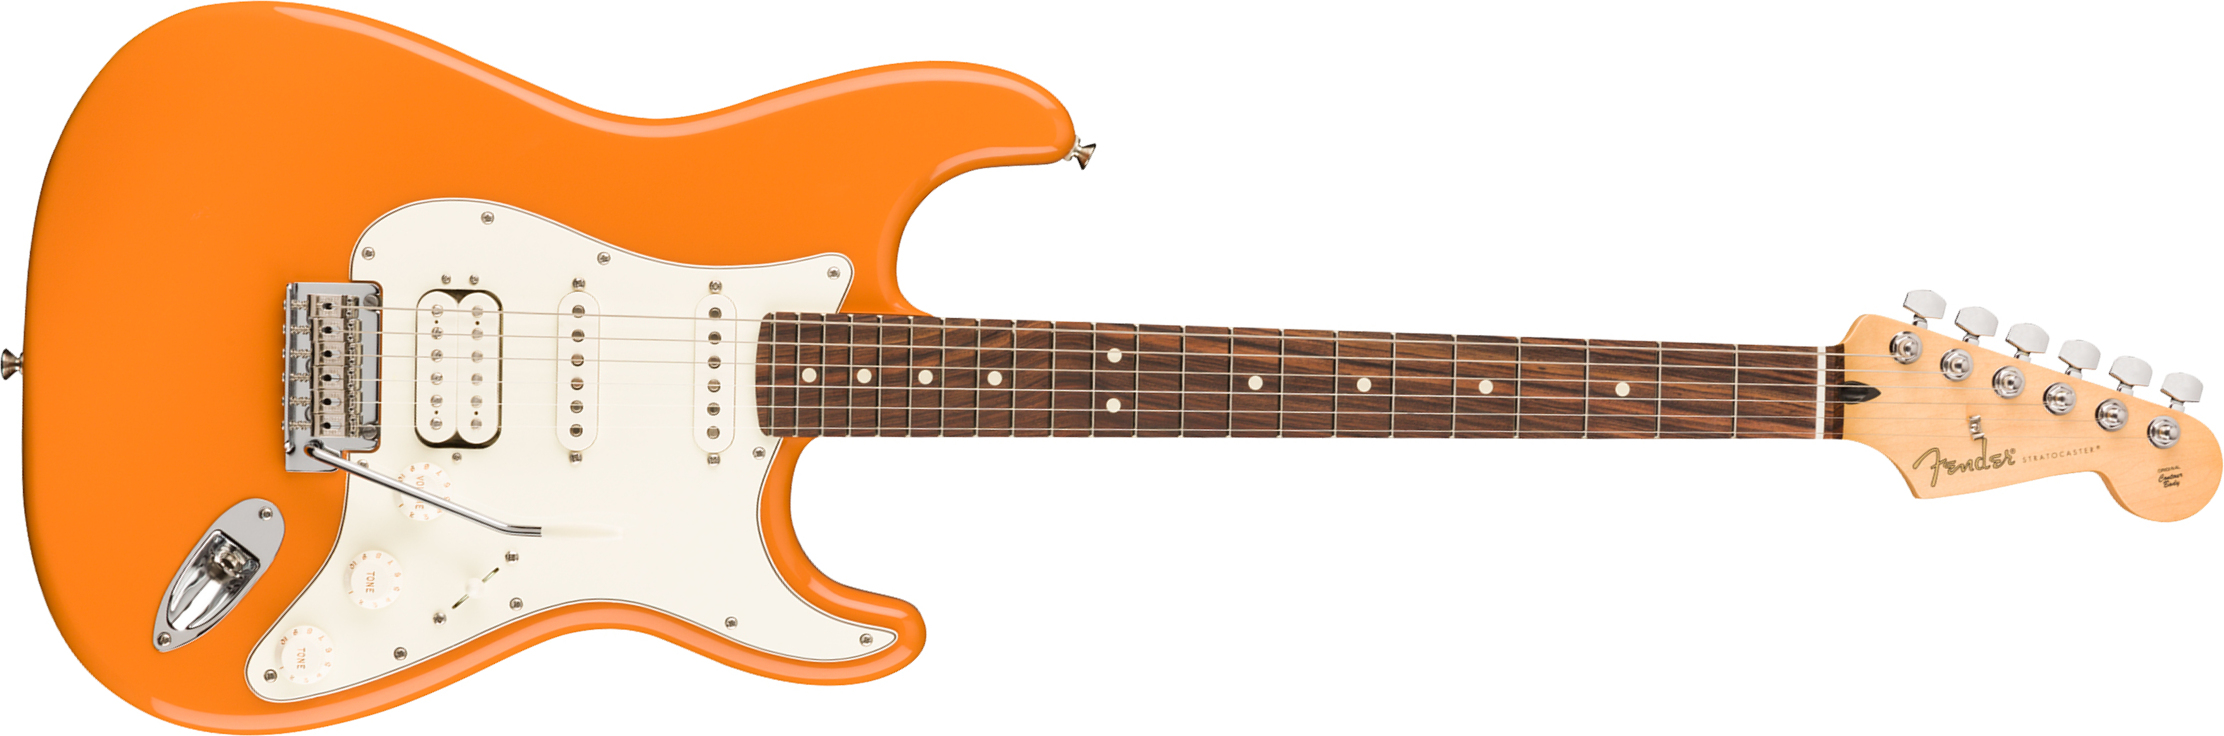 Fender Strat Player Mex Hss Pf - Capri Orange - Guitare Électrique Forme Str - Main picture